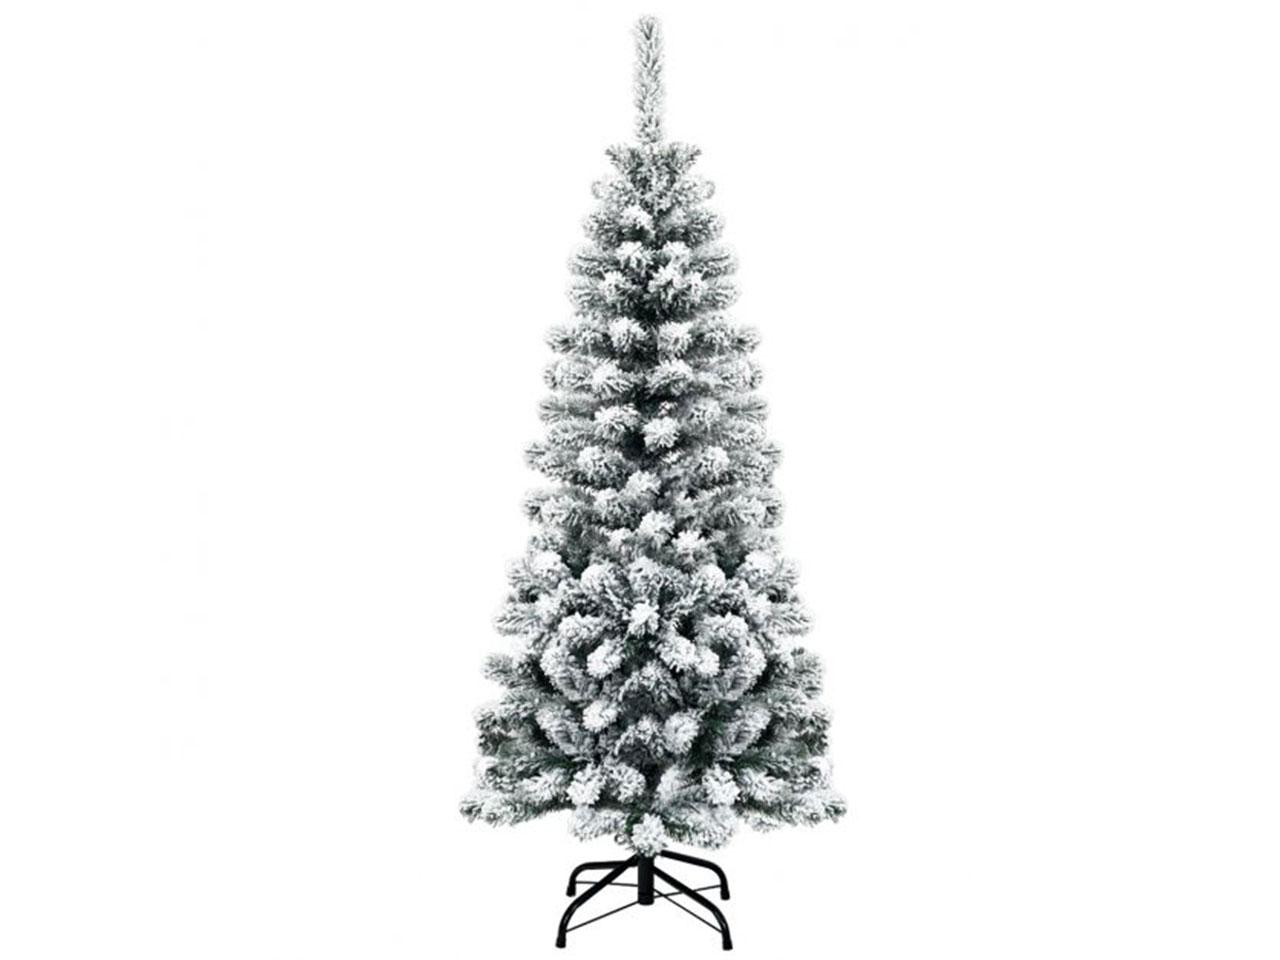 Umělý vánoční stromek CM22871, 135 cm, zasněžený, skládací, borovice, s prémiovými PVC jehlami